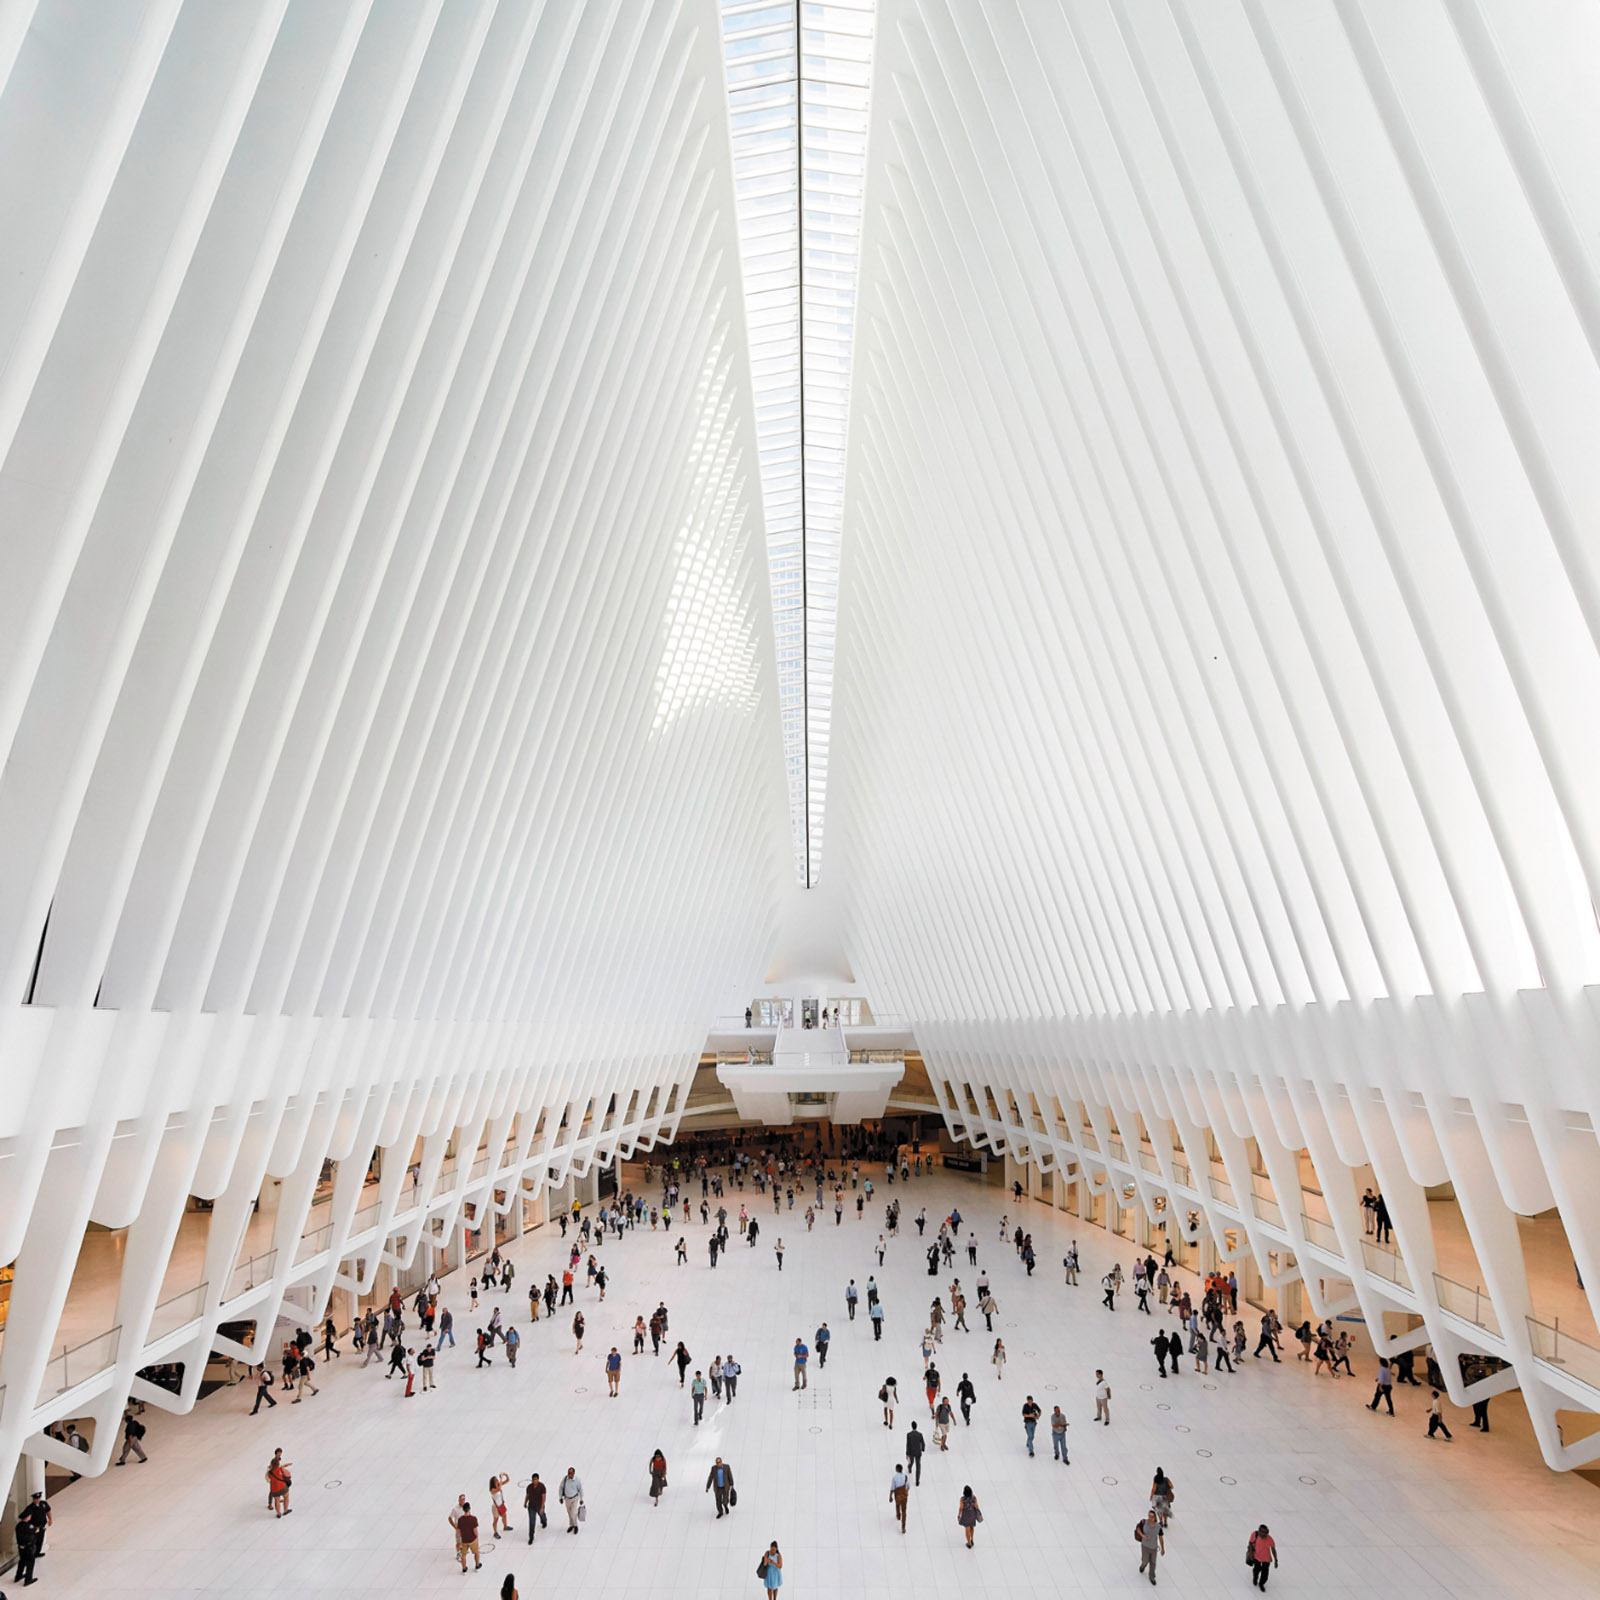 The interior of the World Trade Center Transportation Hub, designed by Santiago Calatrava